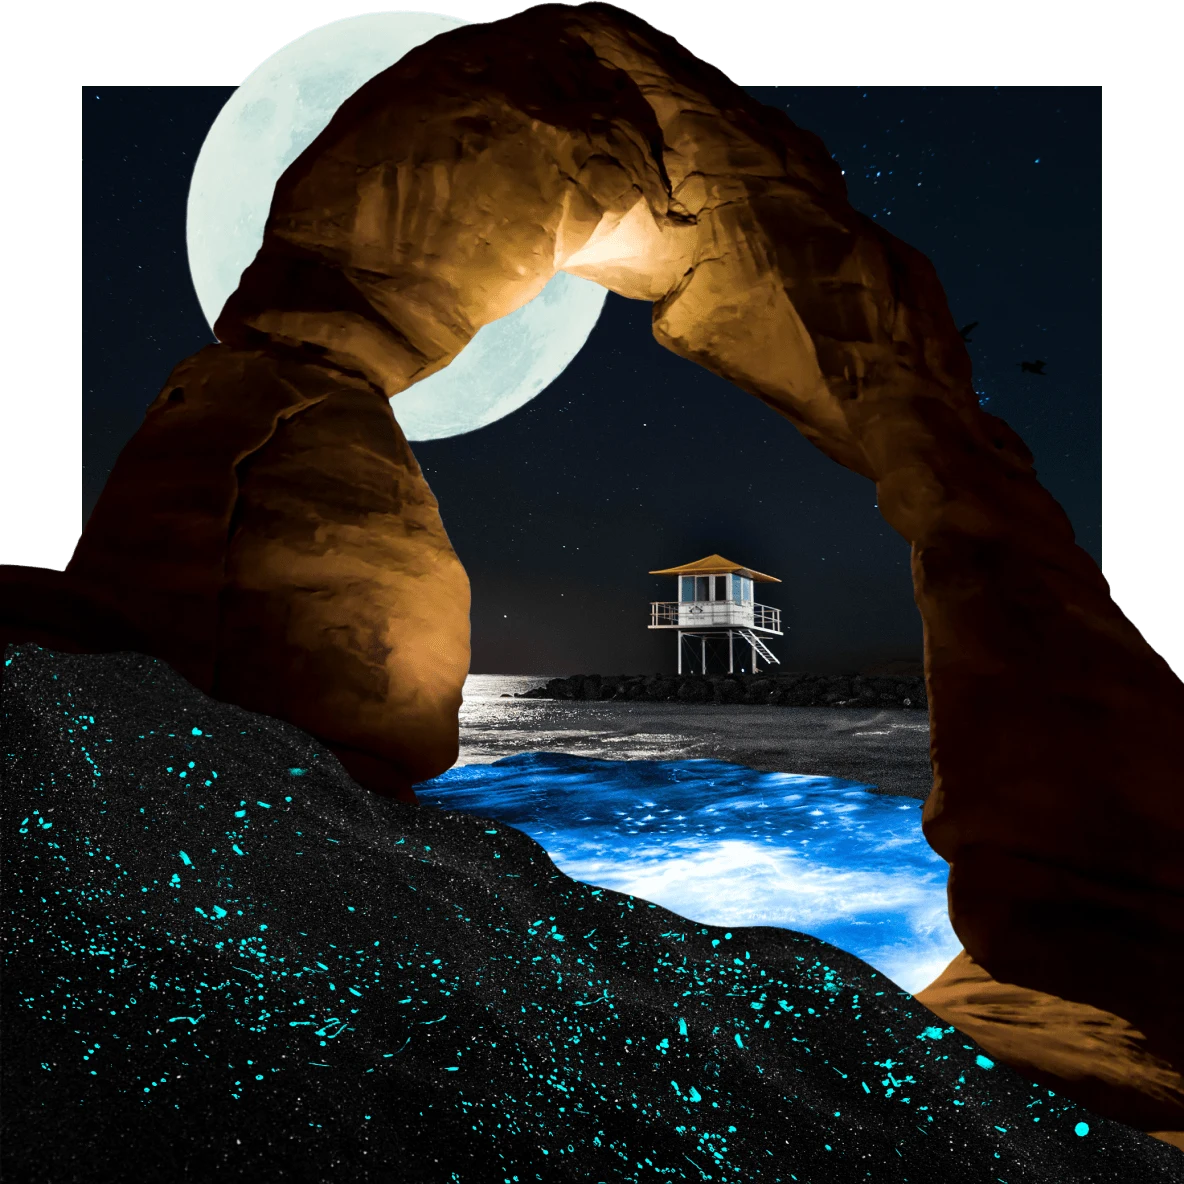 Bassin d'eau éclairé sous une arche en roche rouge. En arrière-plan, pleine lune éclairant une cabane avec une échelle sur des rochers au bord de l'océan. Au premier plan, tâches bleu fluo sur des vagues sombres.